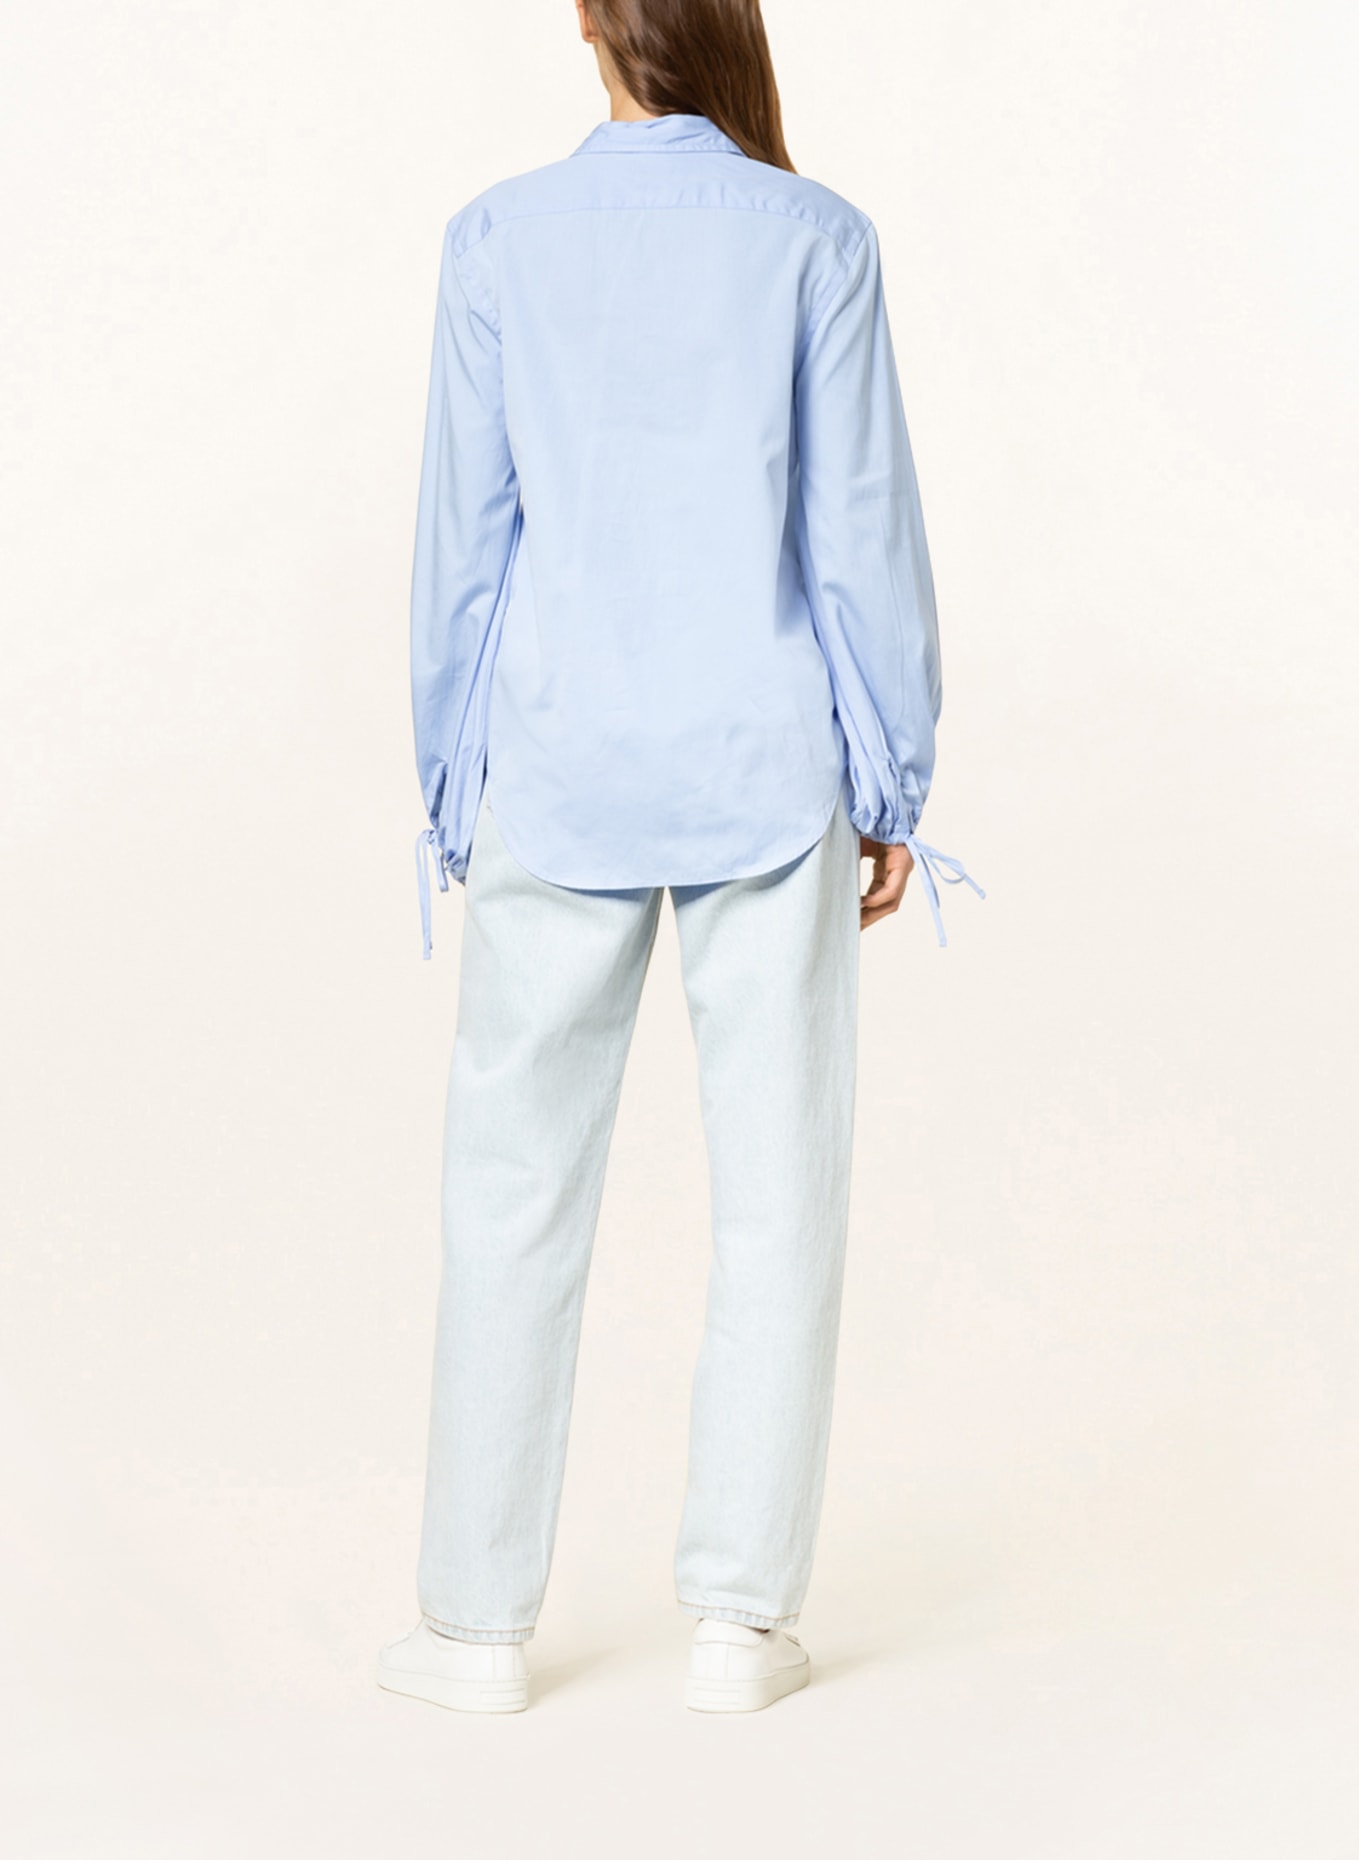 POLO RALPH LAUREN Shirt blouse, Color: LIGHT BLUE (Image 3)